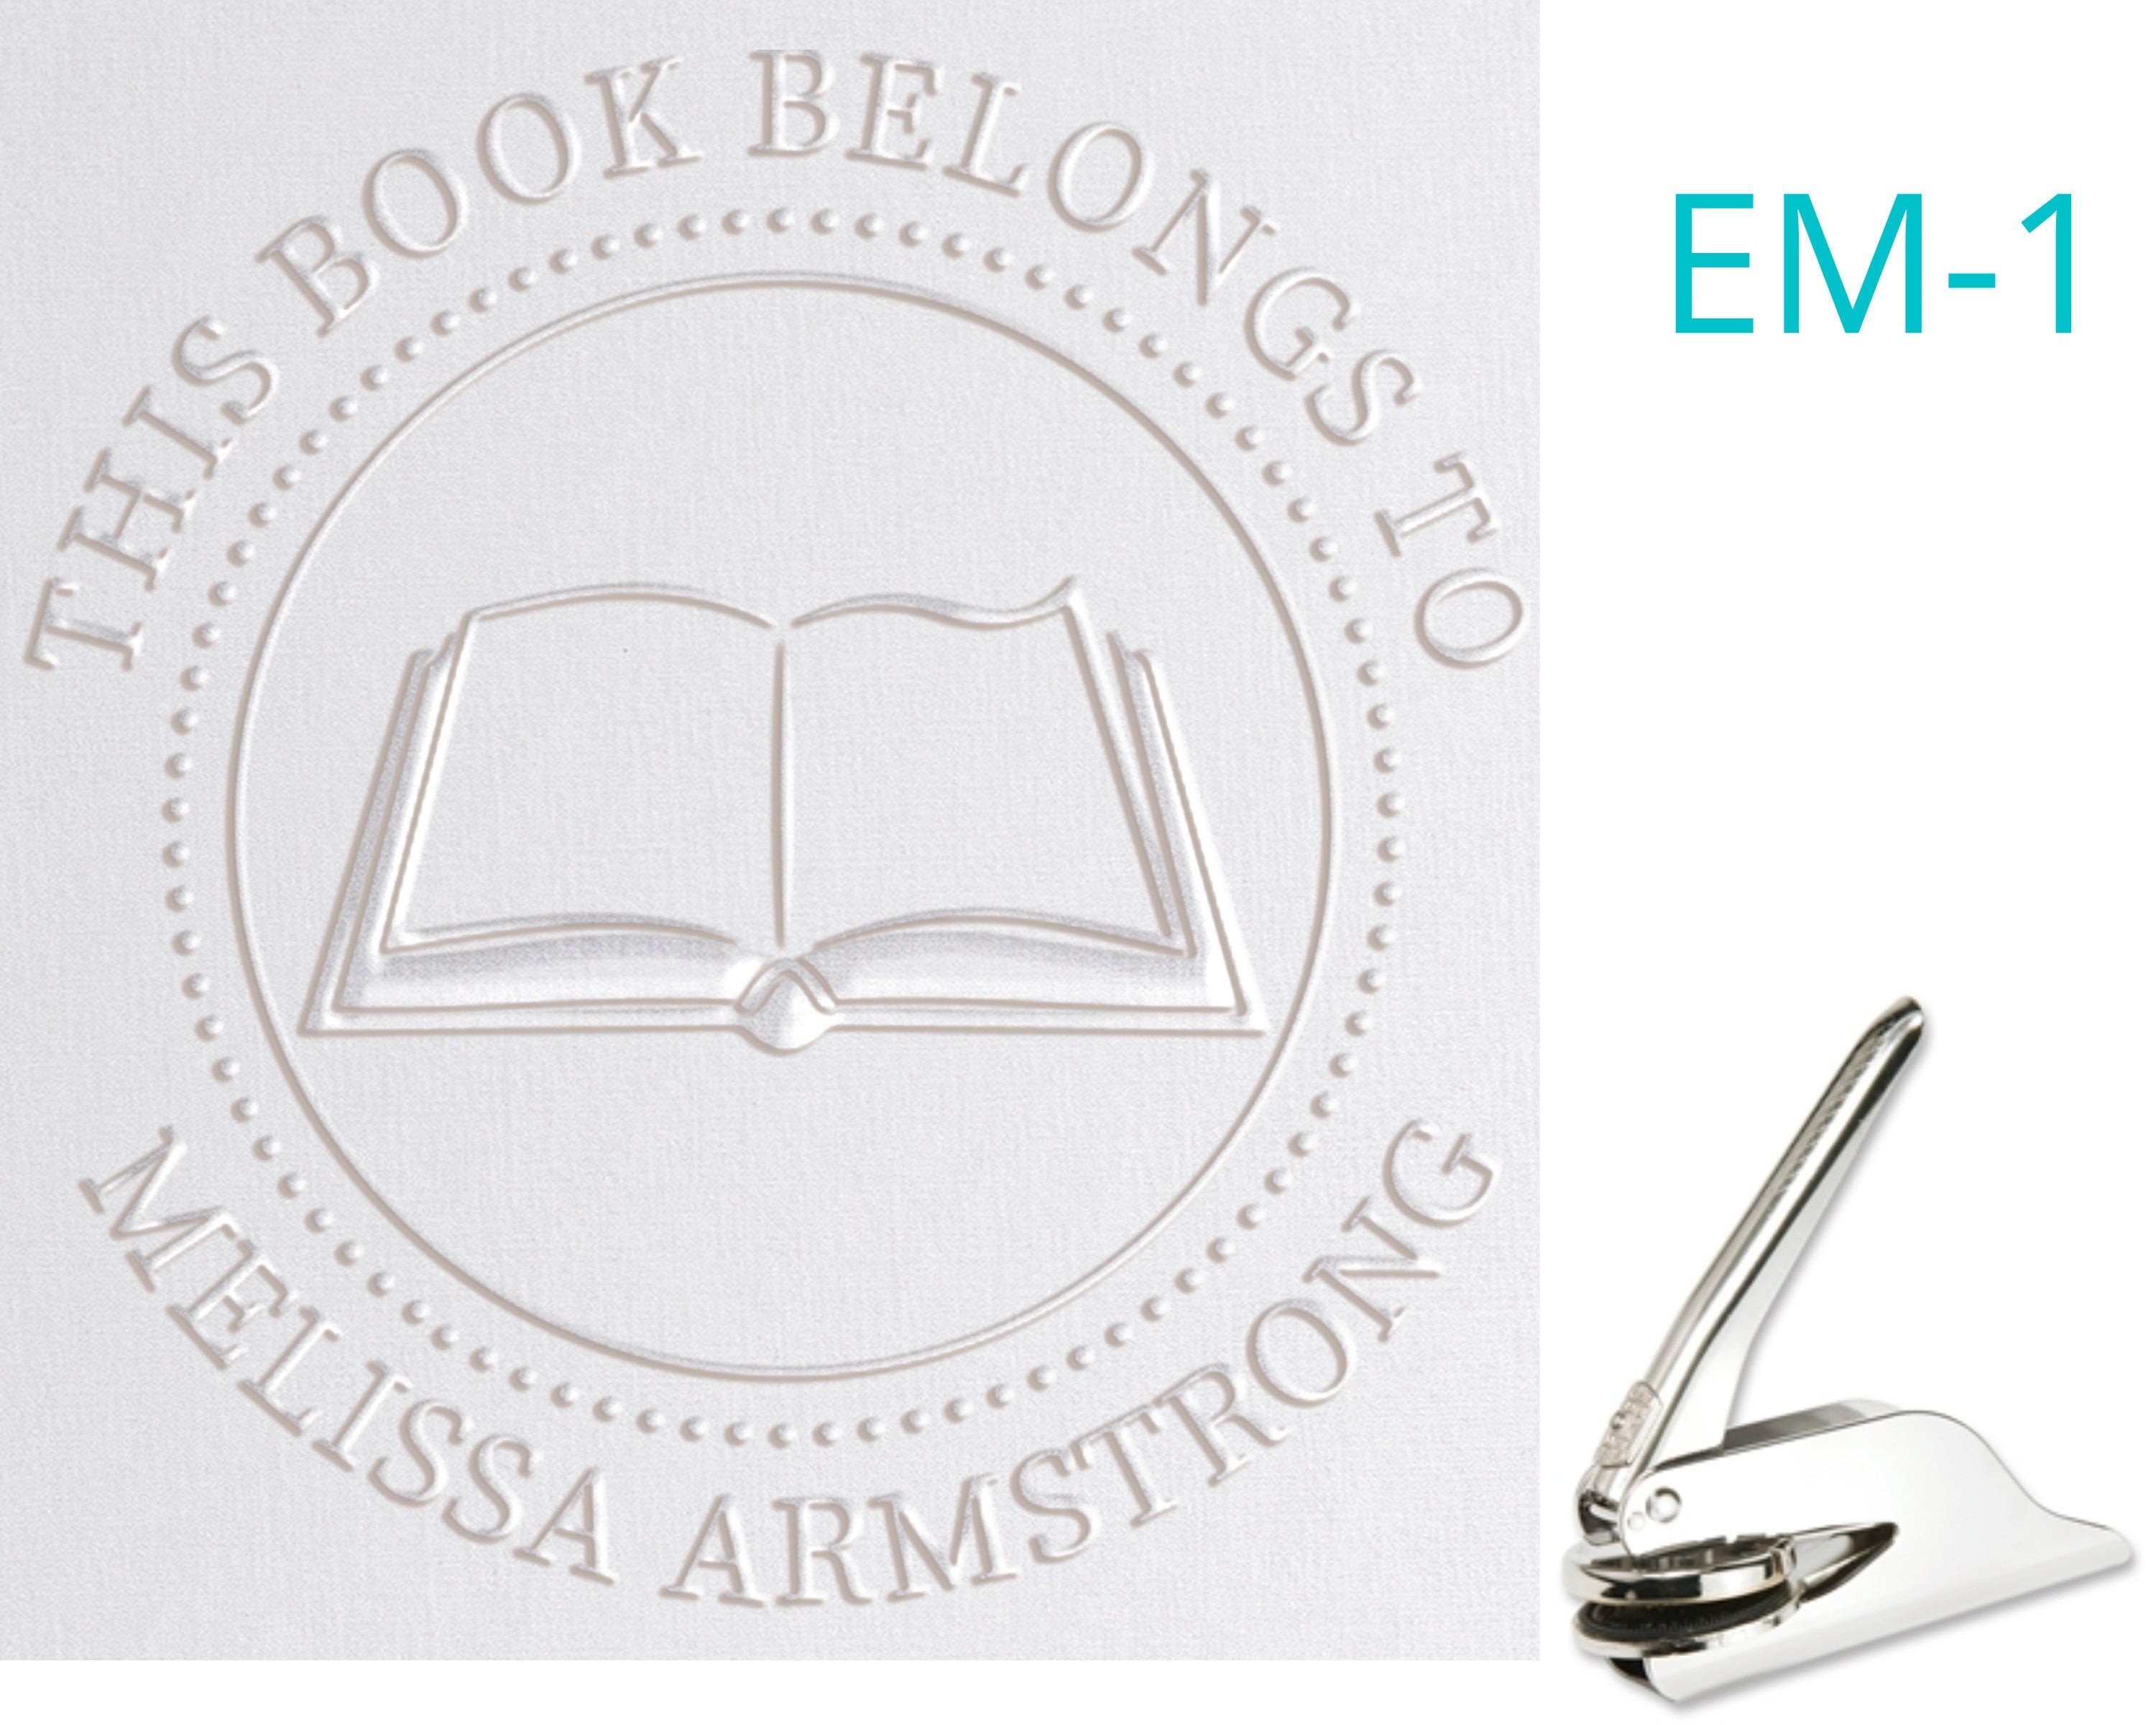 Custom Library Book Embosser - Glasses